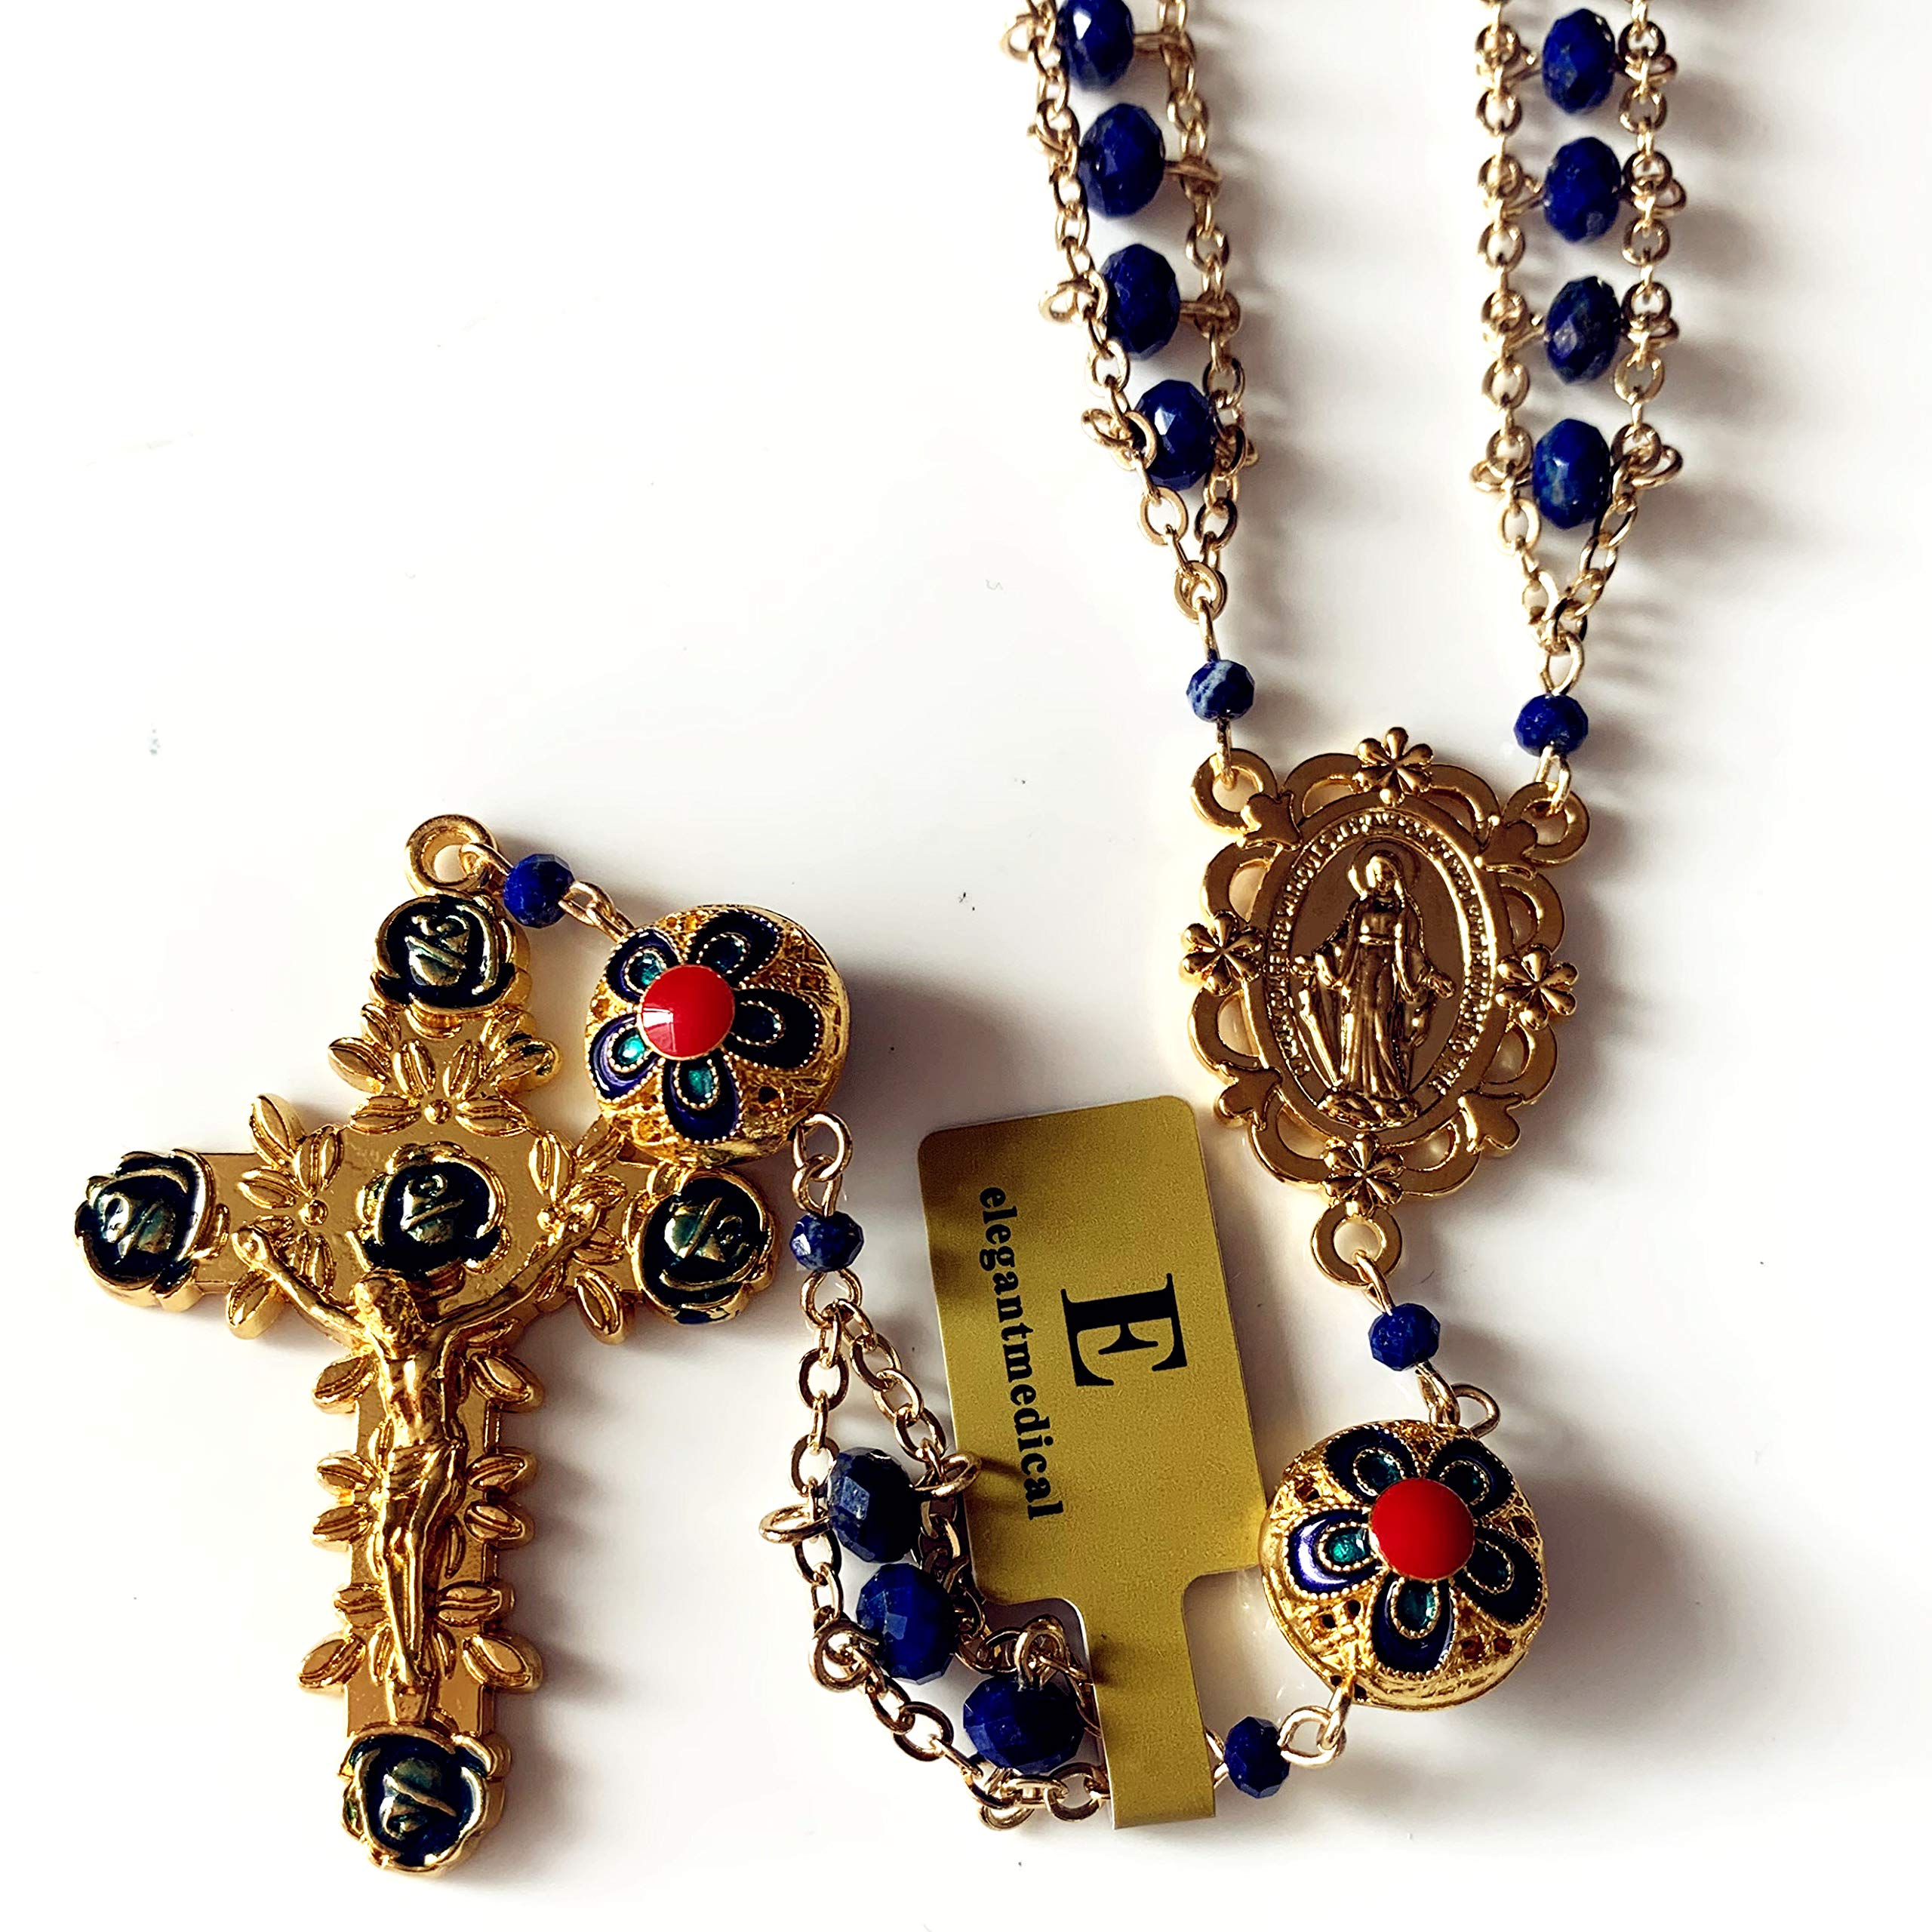 elegantmedical handmade Gold Ladder to Heaven Lapis Lazuli & Enamel Beads Catholic Rosary crucifix Necklace